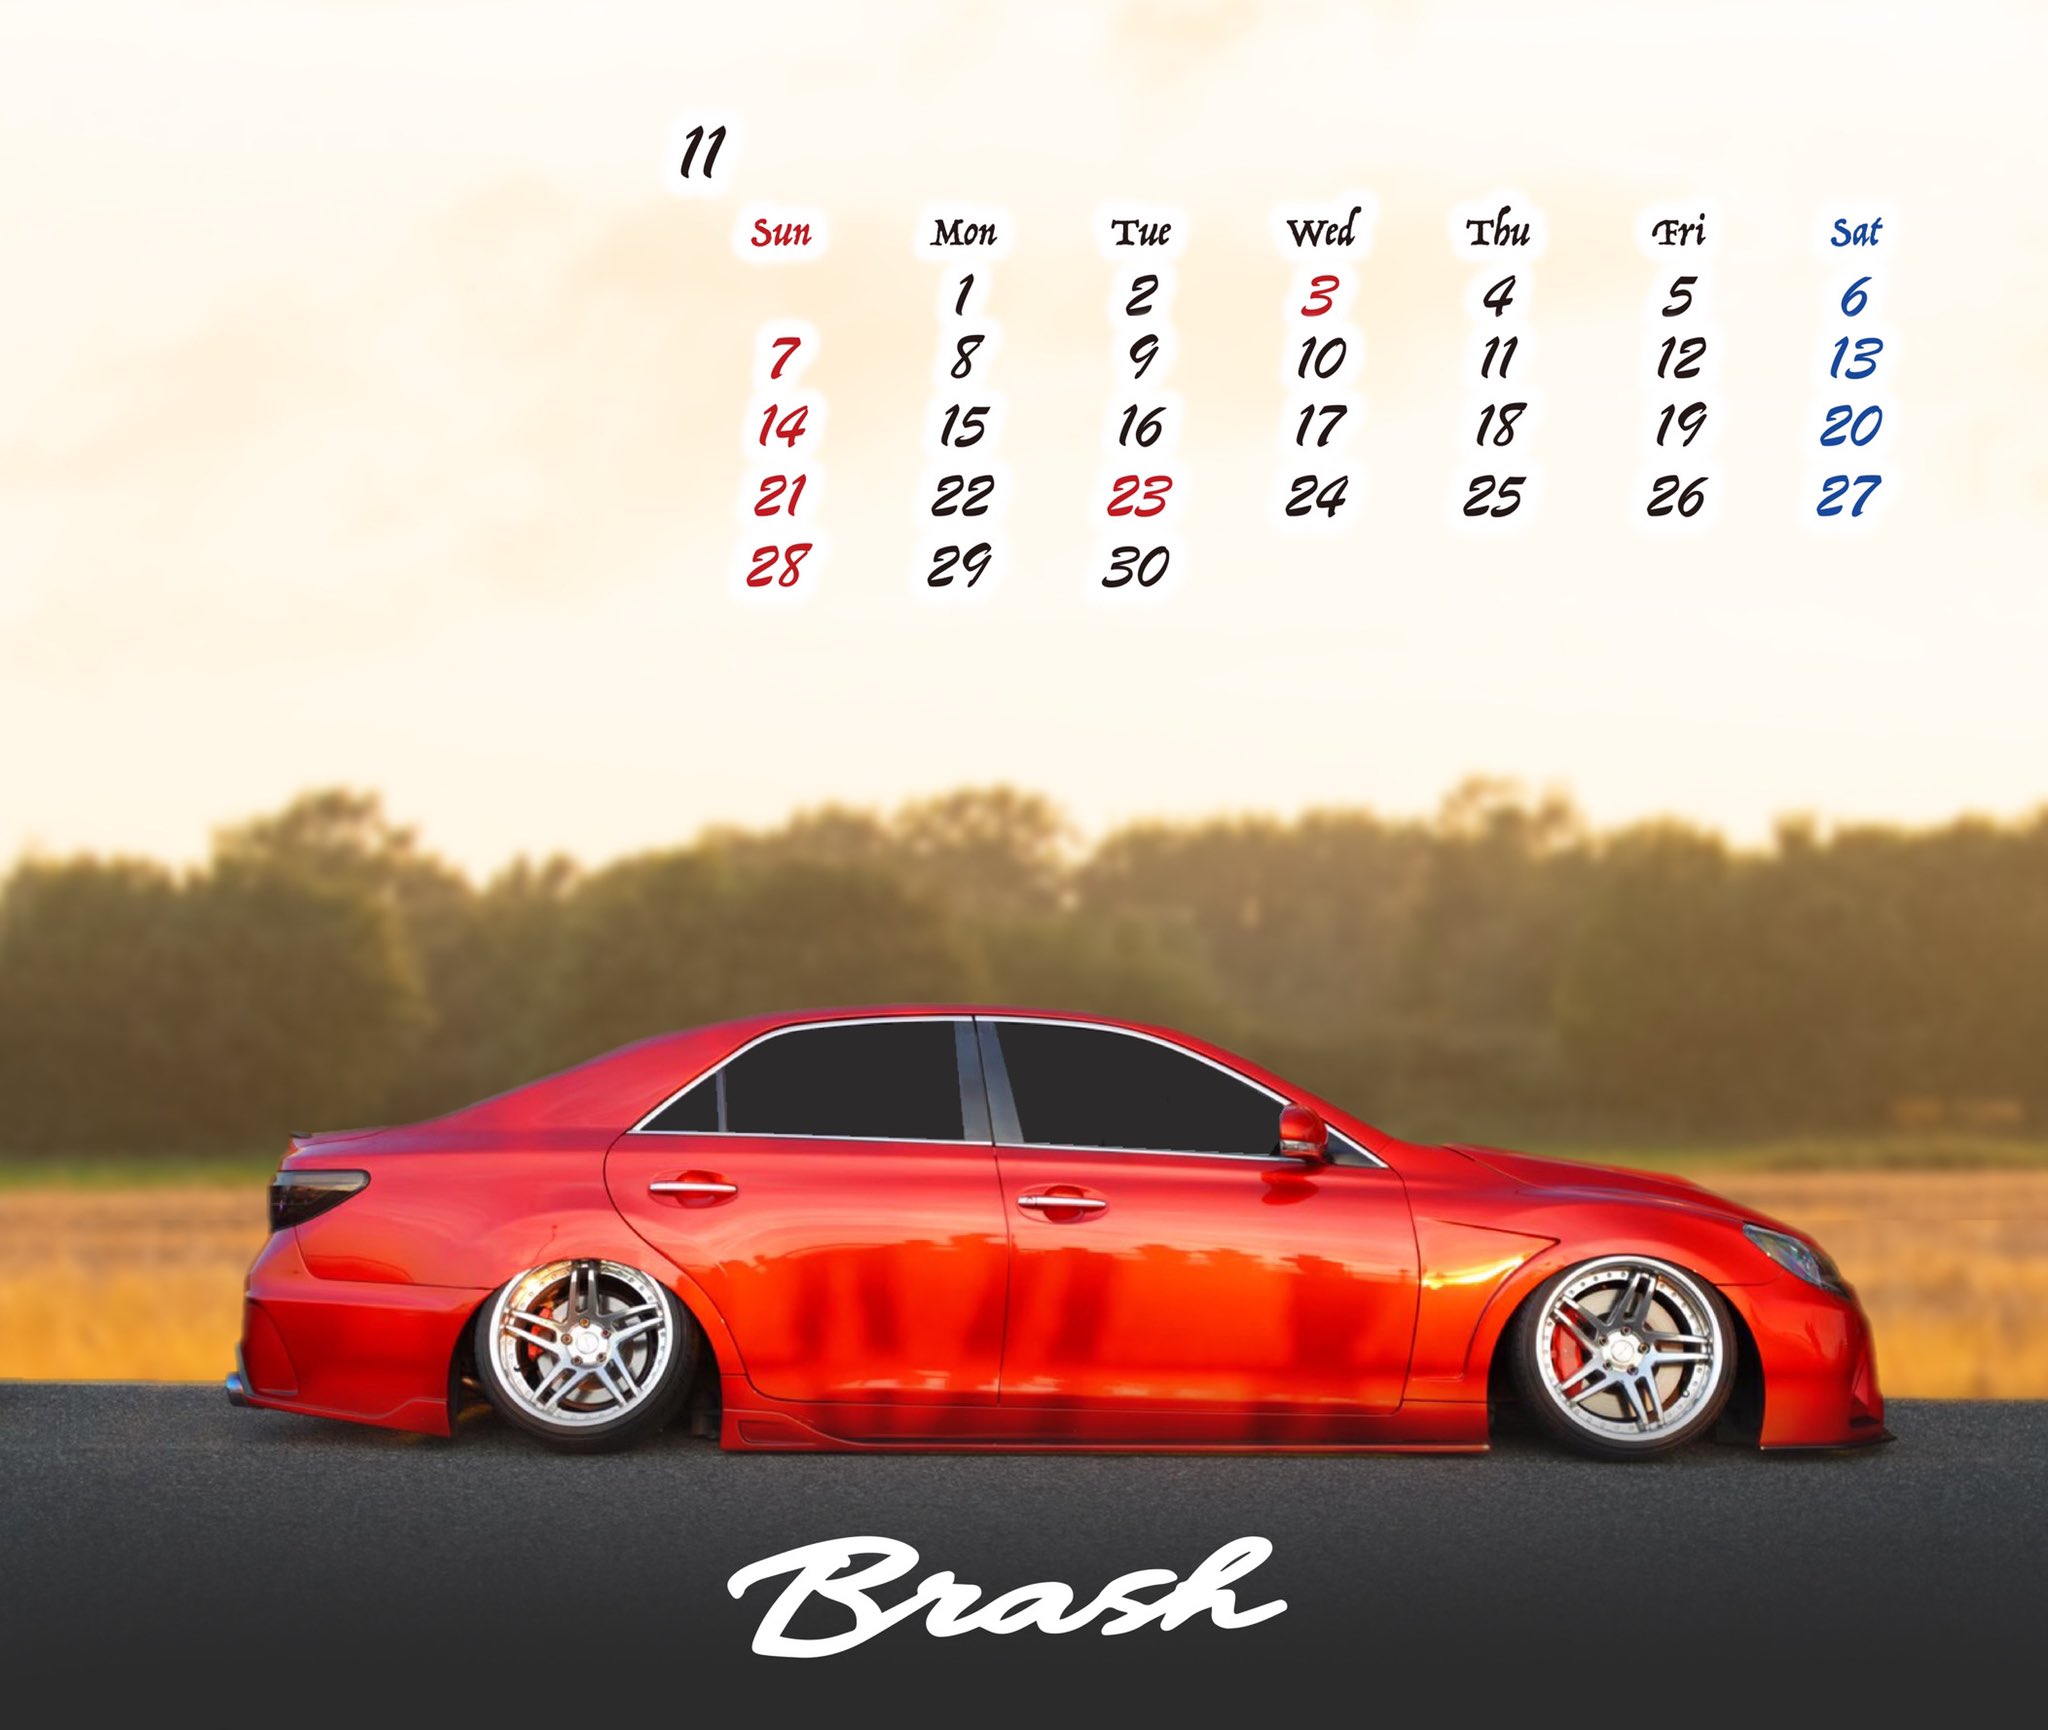 カスタムカー専門店 ガレージサクセス Brash 11 6 Fixwell 既に11月になってますが 今月のカレンダーの壁紙を作りました 2枚目はスマートフォンのロック画面に使用していただけます D ガレージサクセス Toyota カスタムカー 壁紙